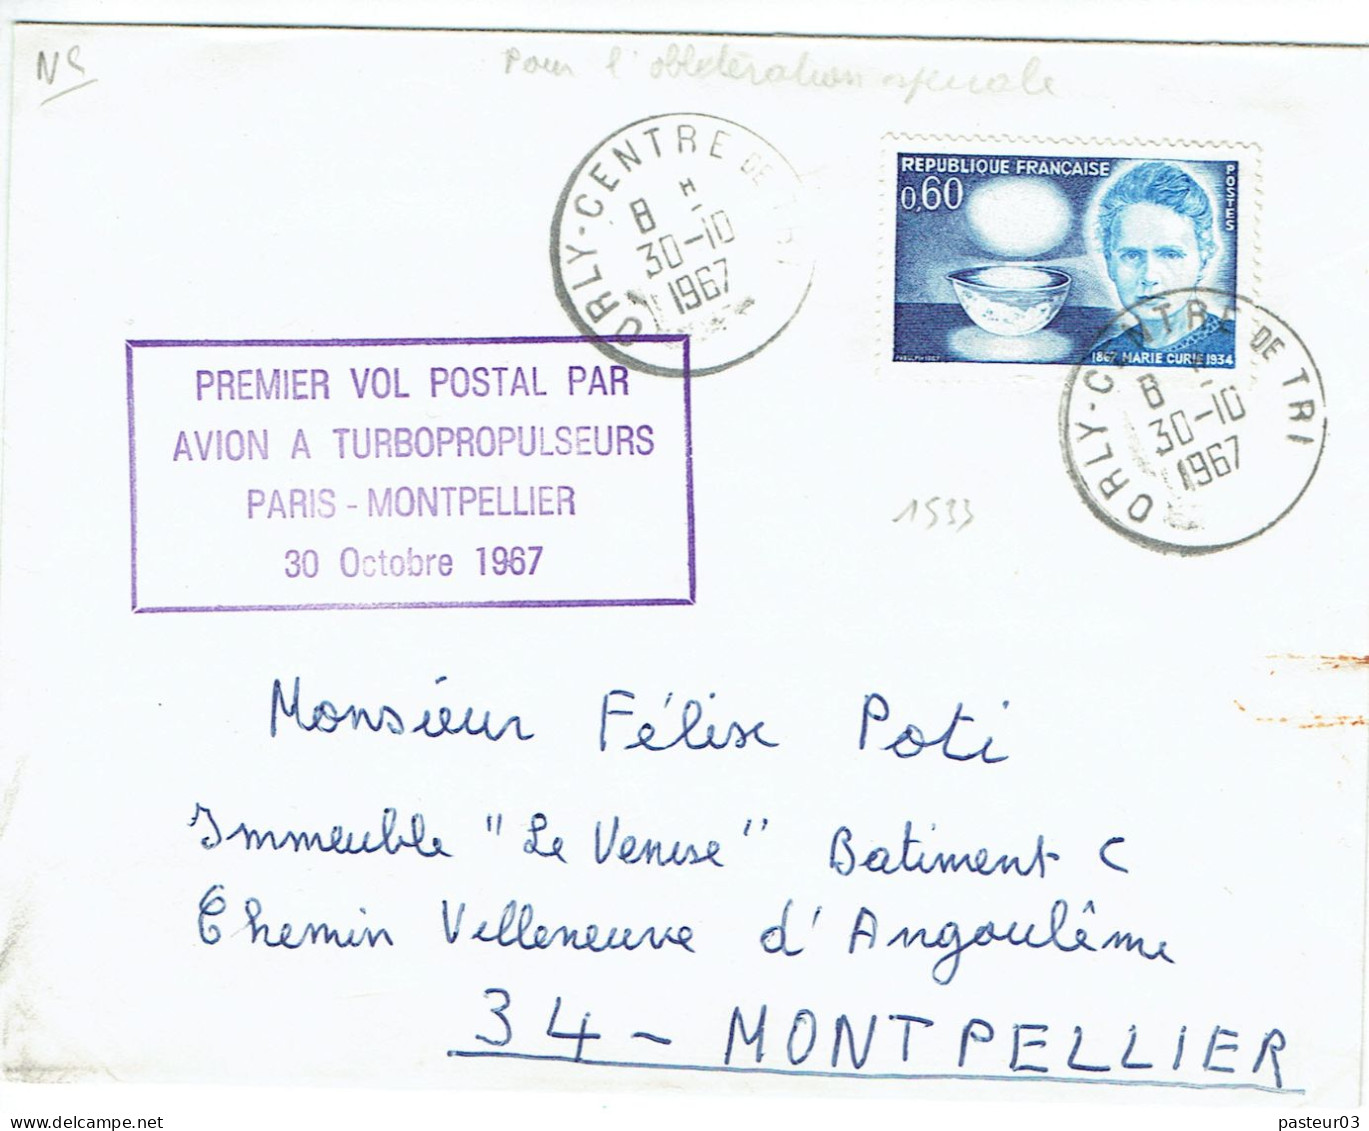 Premier Vol Postal Par Avion à Turbopropulseurs Paris Montpellier 30 Octobre 1967 Timbre N° 1533 De France TaD Orly Cent - 1960-.... Covers & Documents